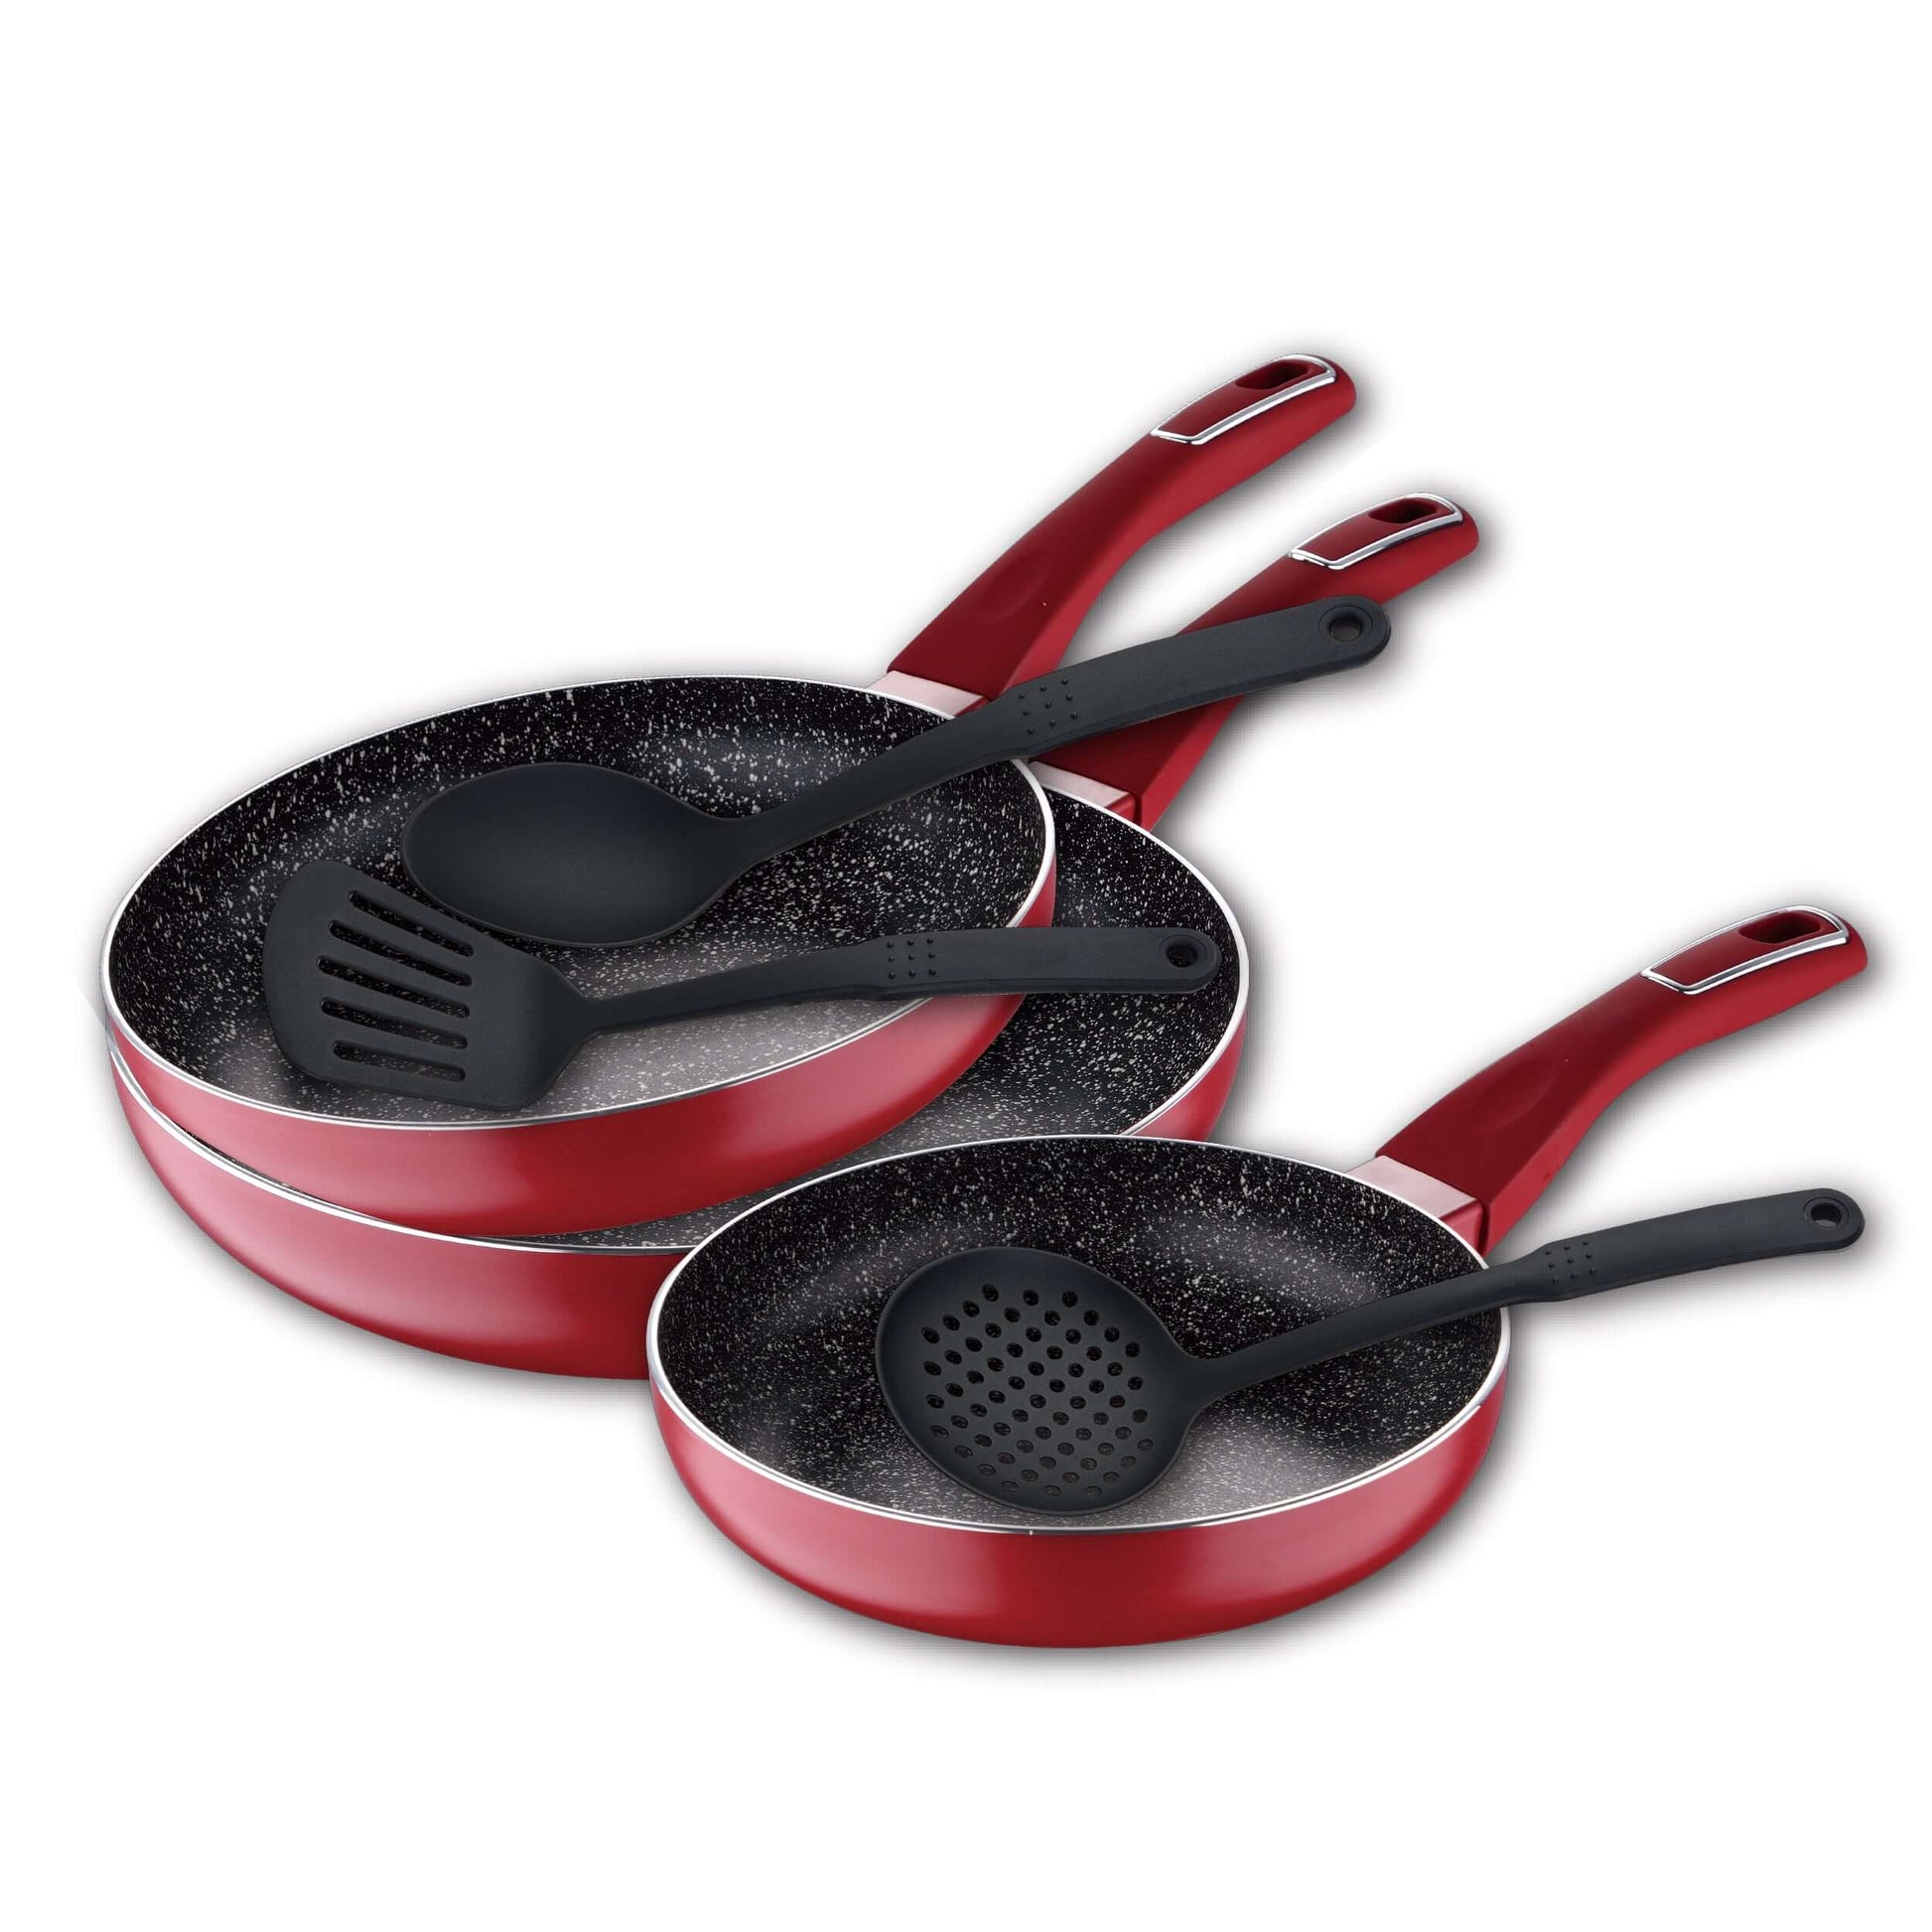 Set 3 sartenes rojas con utensilios de cocina - Land